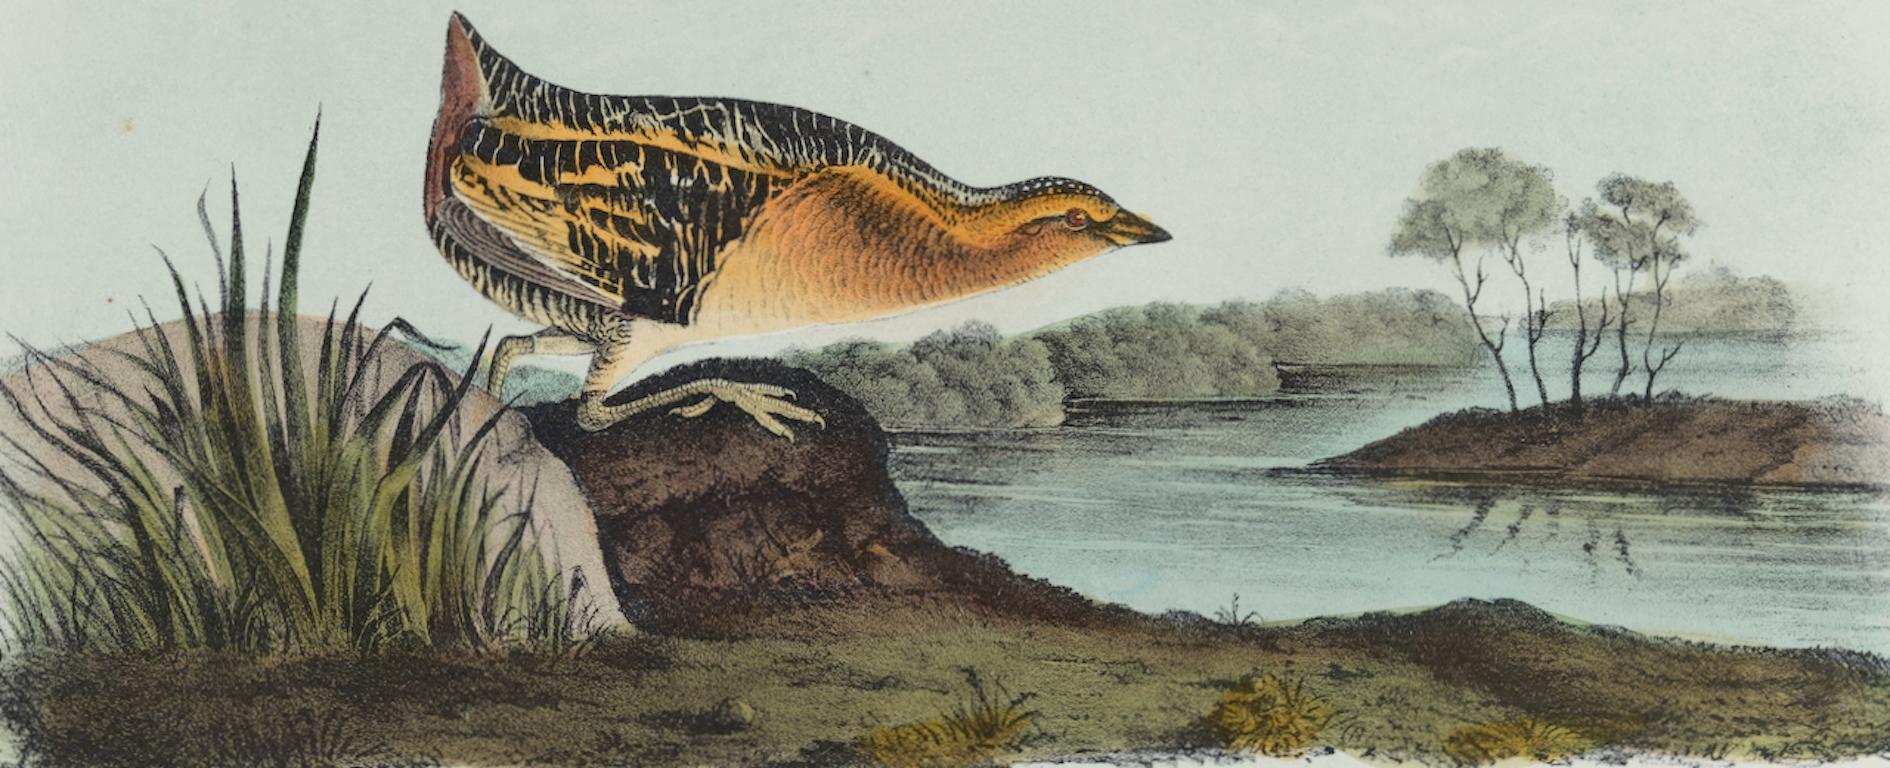 Rail : une lithographie originale d'Audubon du 19e siècle, colorée à la main, représentant un oiseau au brun jaune  - Print de John James Audubon